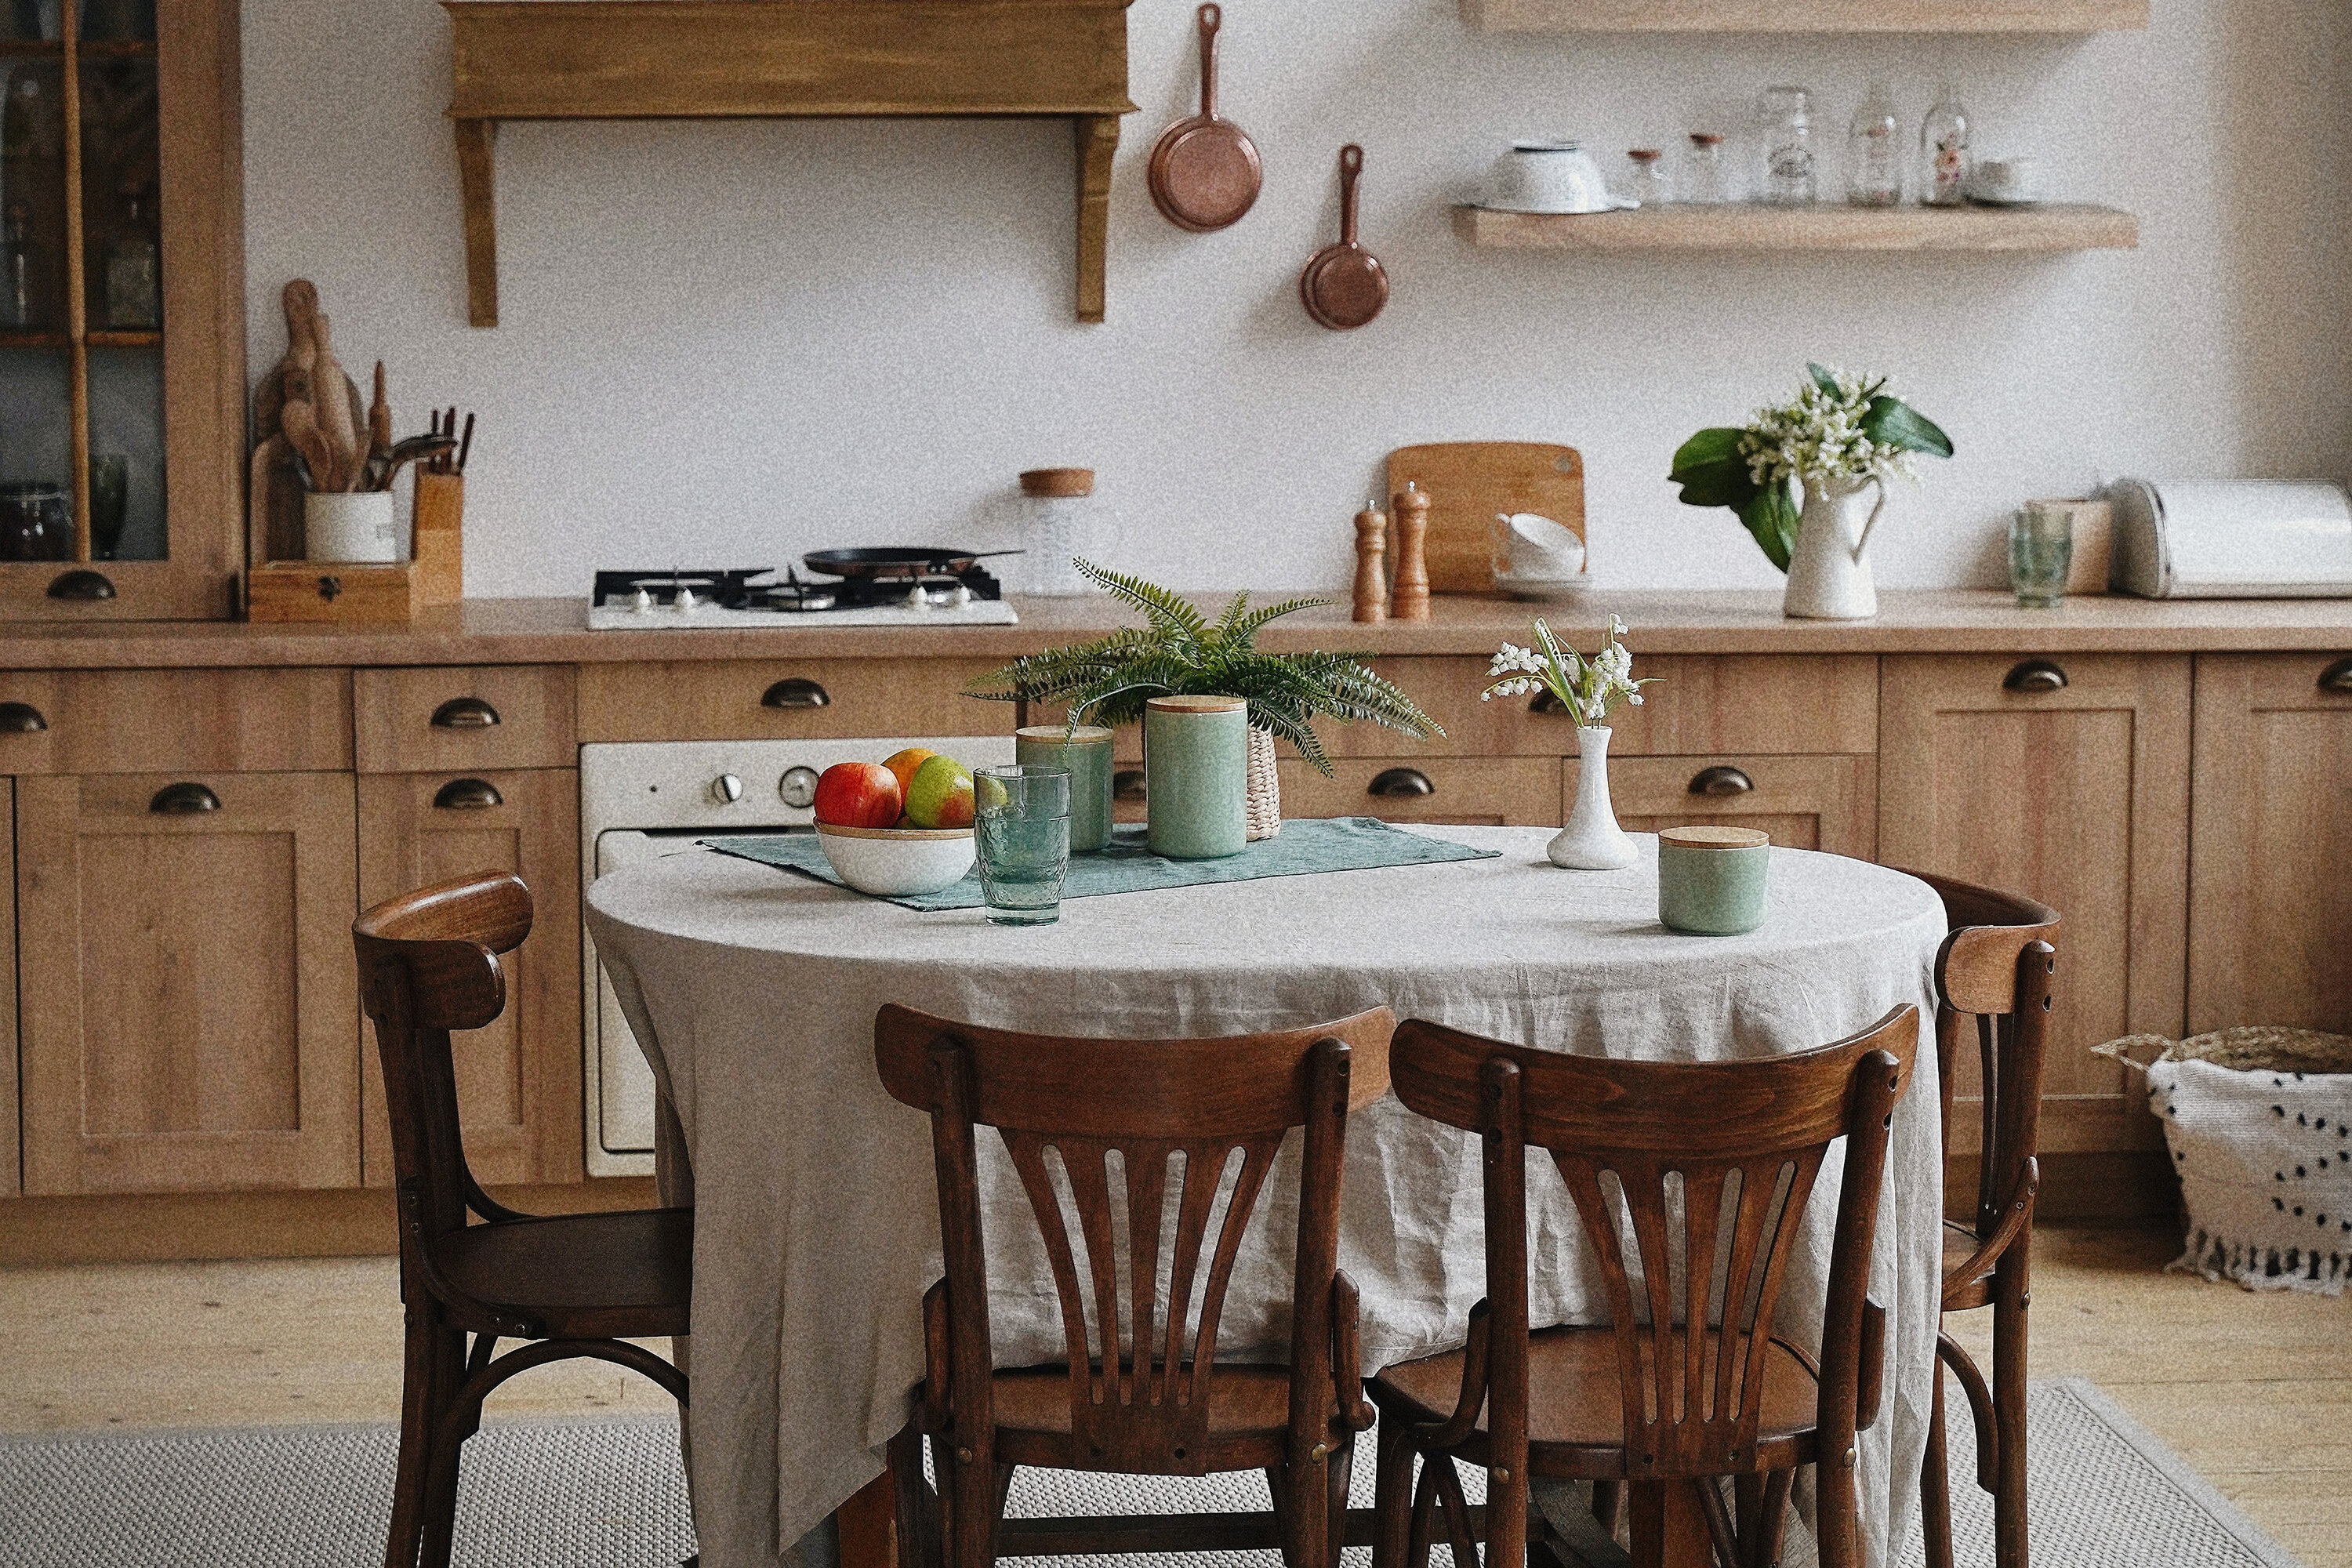 Повторяем интерьер: светлая кухня с атмосферой деревенской простоты и парного молока